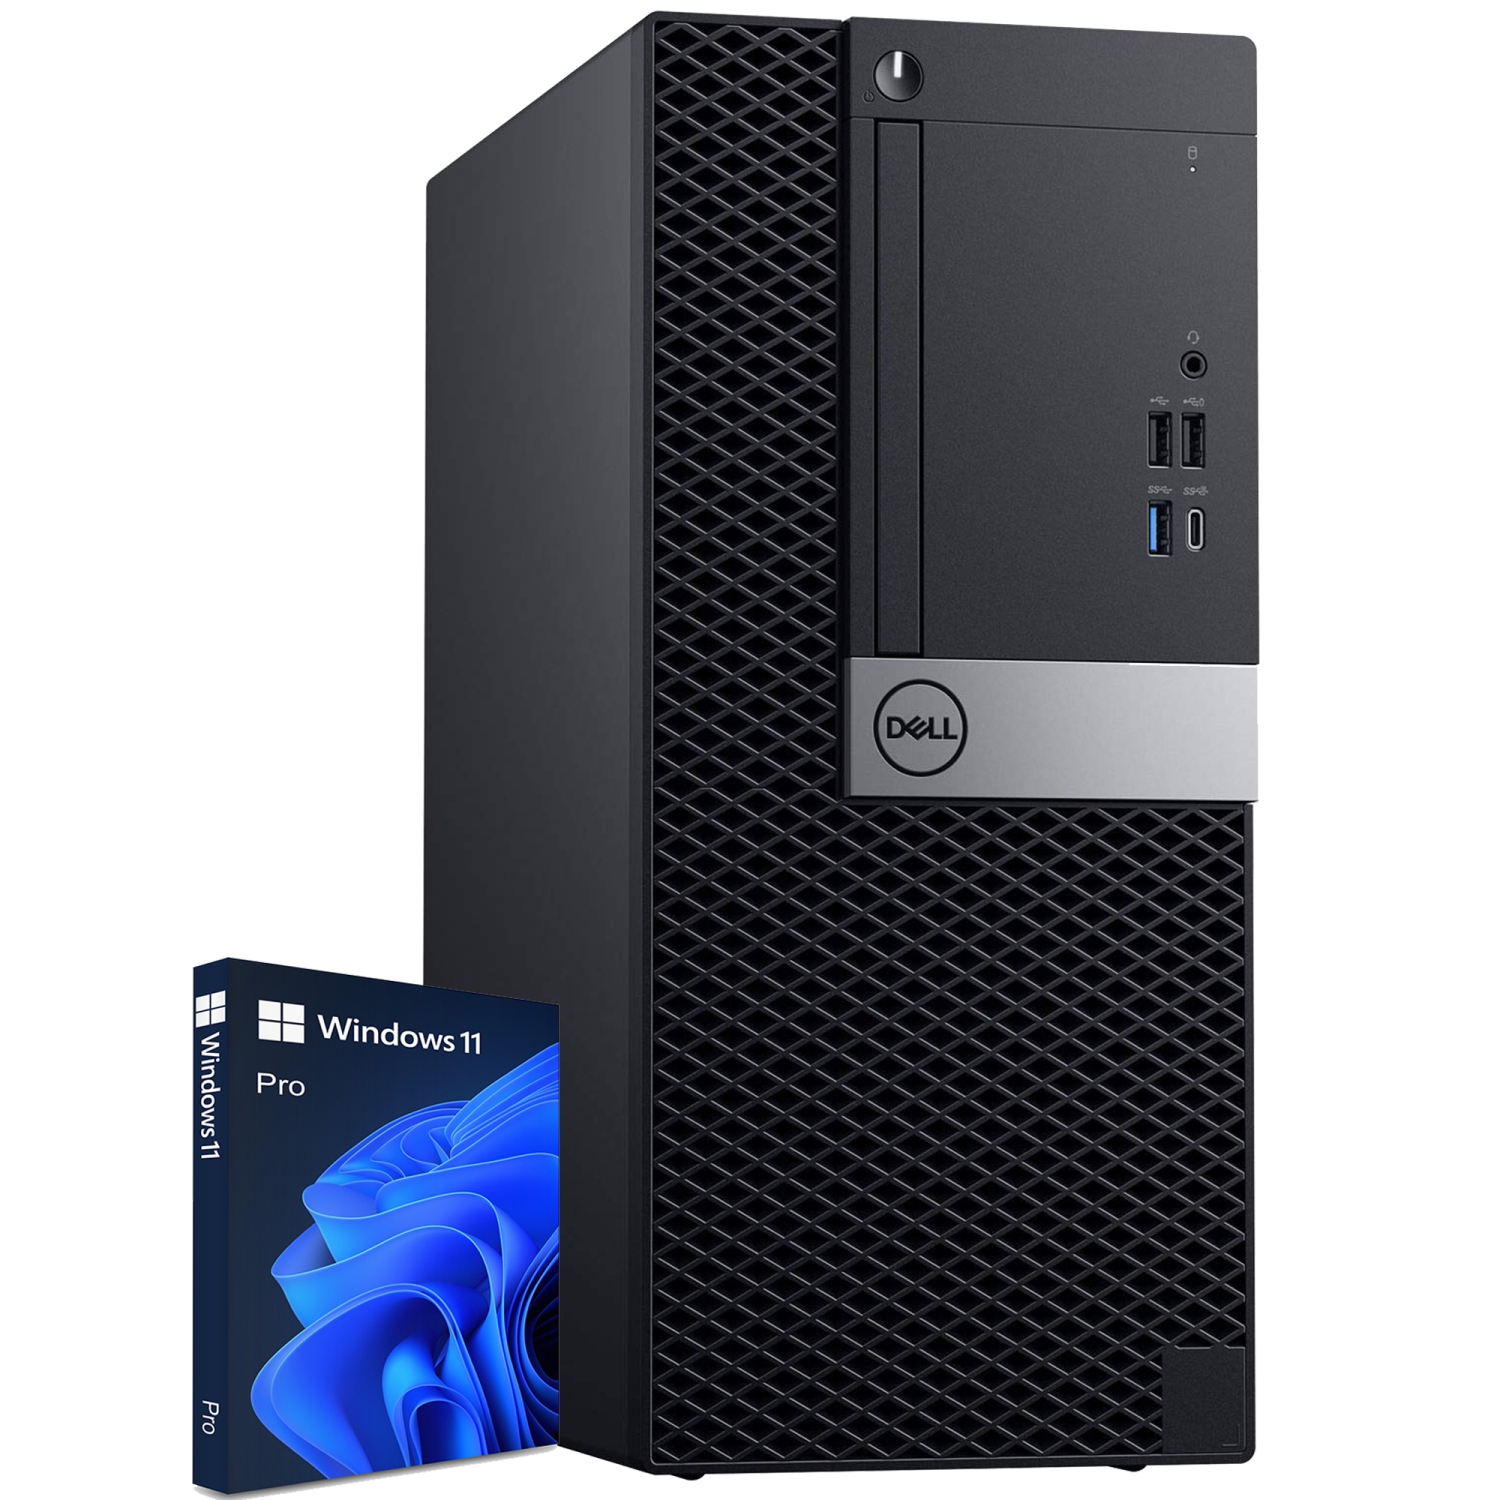 Refurbished (Good) - Dell Computers OptiPlex 7060 Tower Windows 11 Pro Business Desktop PC (Intel Hexa-Core i7 Processor/ 32GB DDR4 RAM/ New 1TB SSD/ WIFI/ Bluetooth) - Black